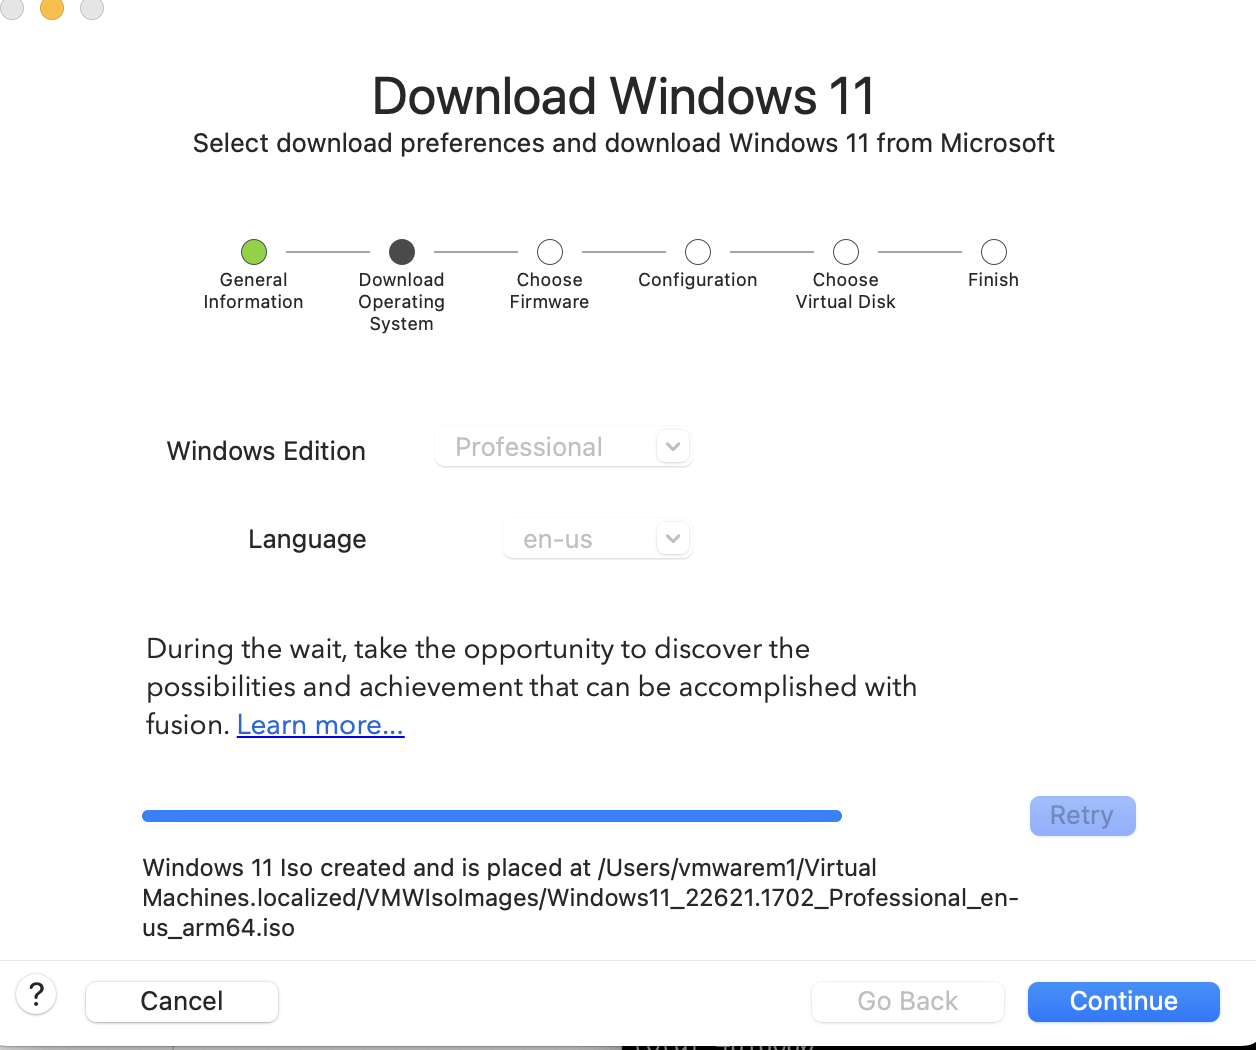 La captura de pantalla muestra la finalización de la descarga de Windows 11 y la creación de ISO.